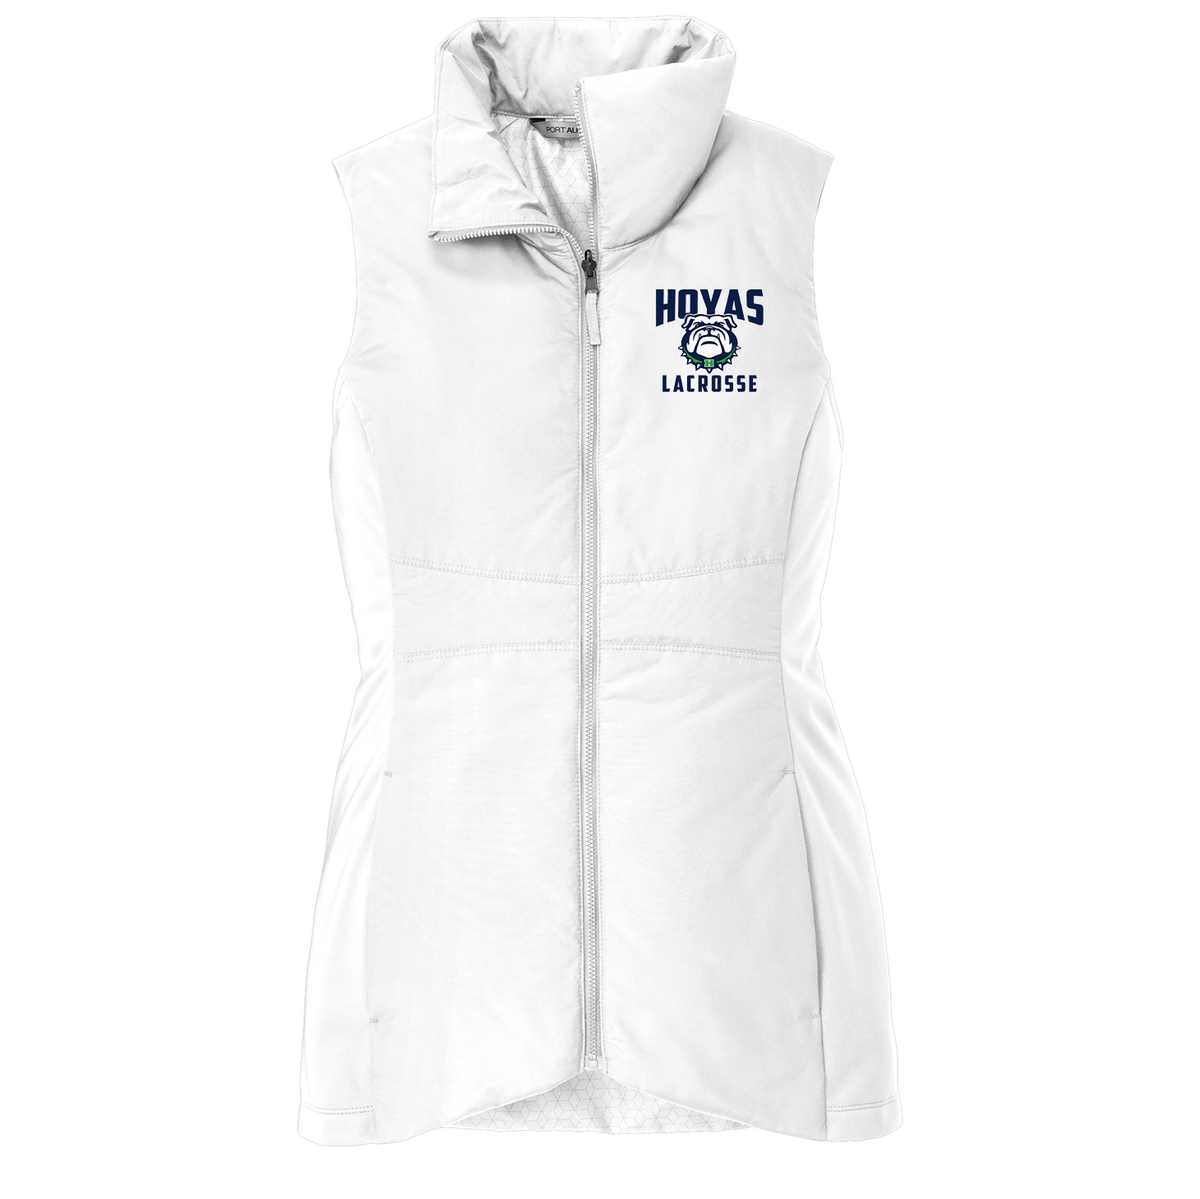 Hoya Lacrosse Women's Vest